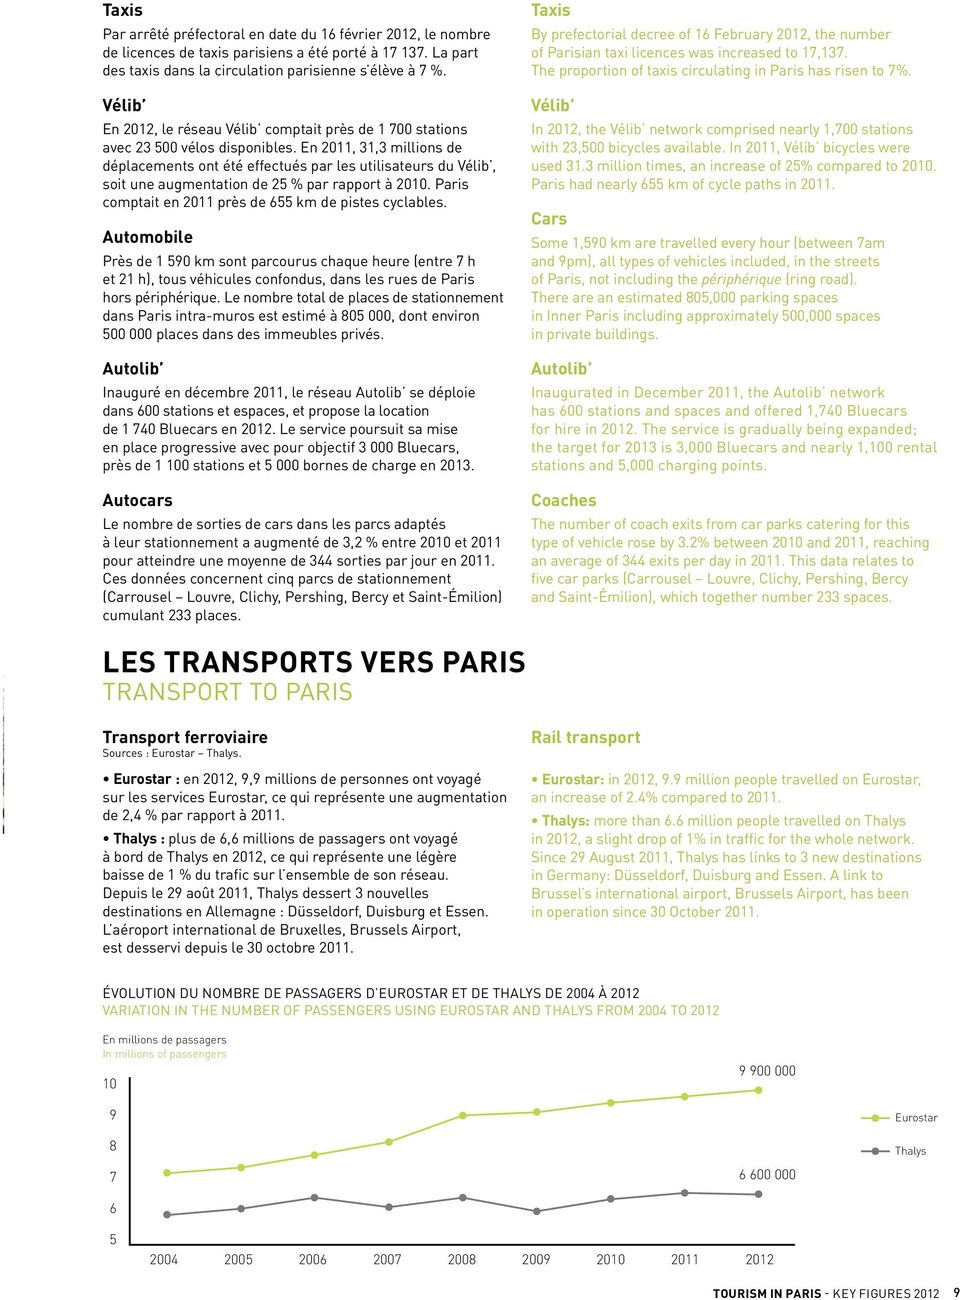 En 2011, 31,3 millions de déplacements ont été effectués par les utilisateurs du Vélib, soit une augmentation de 25 % par rapport à 2010. Paris comptait en 2011 près de 655 km de pistes cyclables.